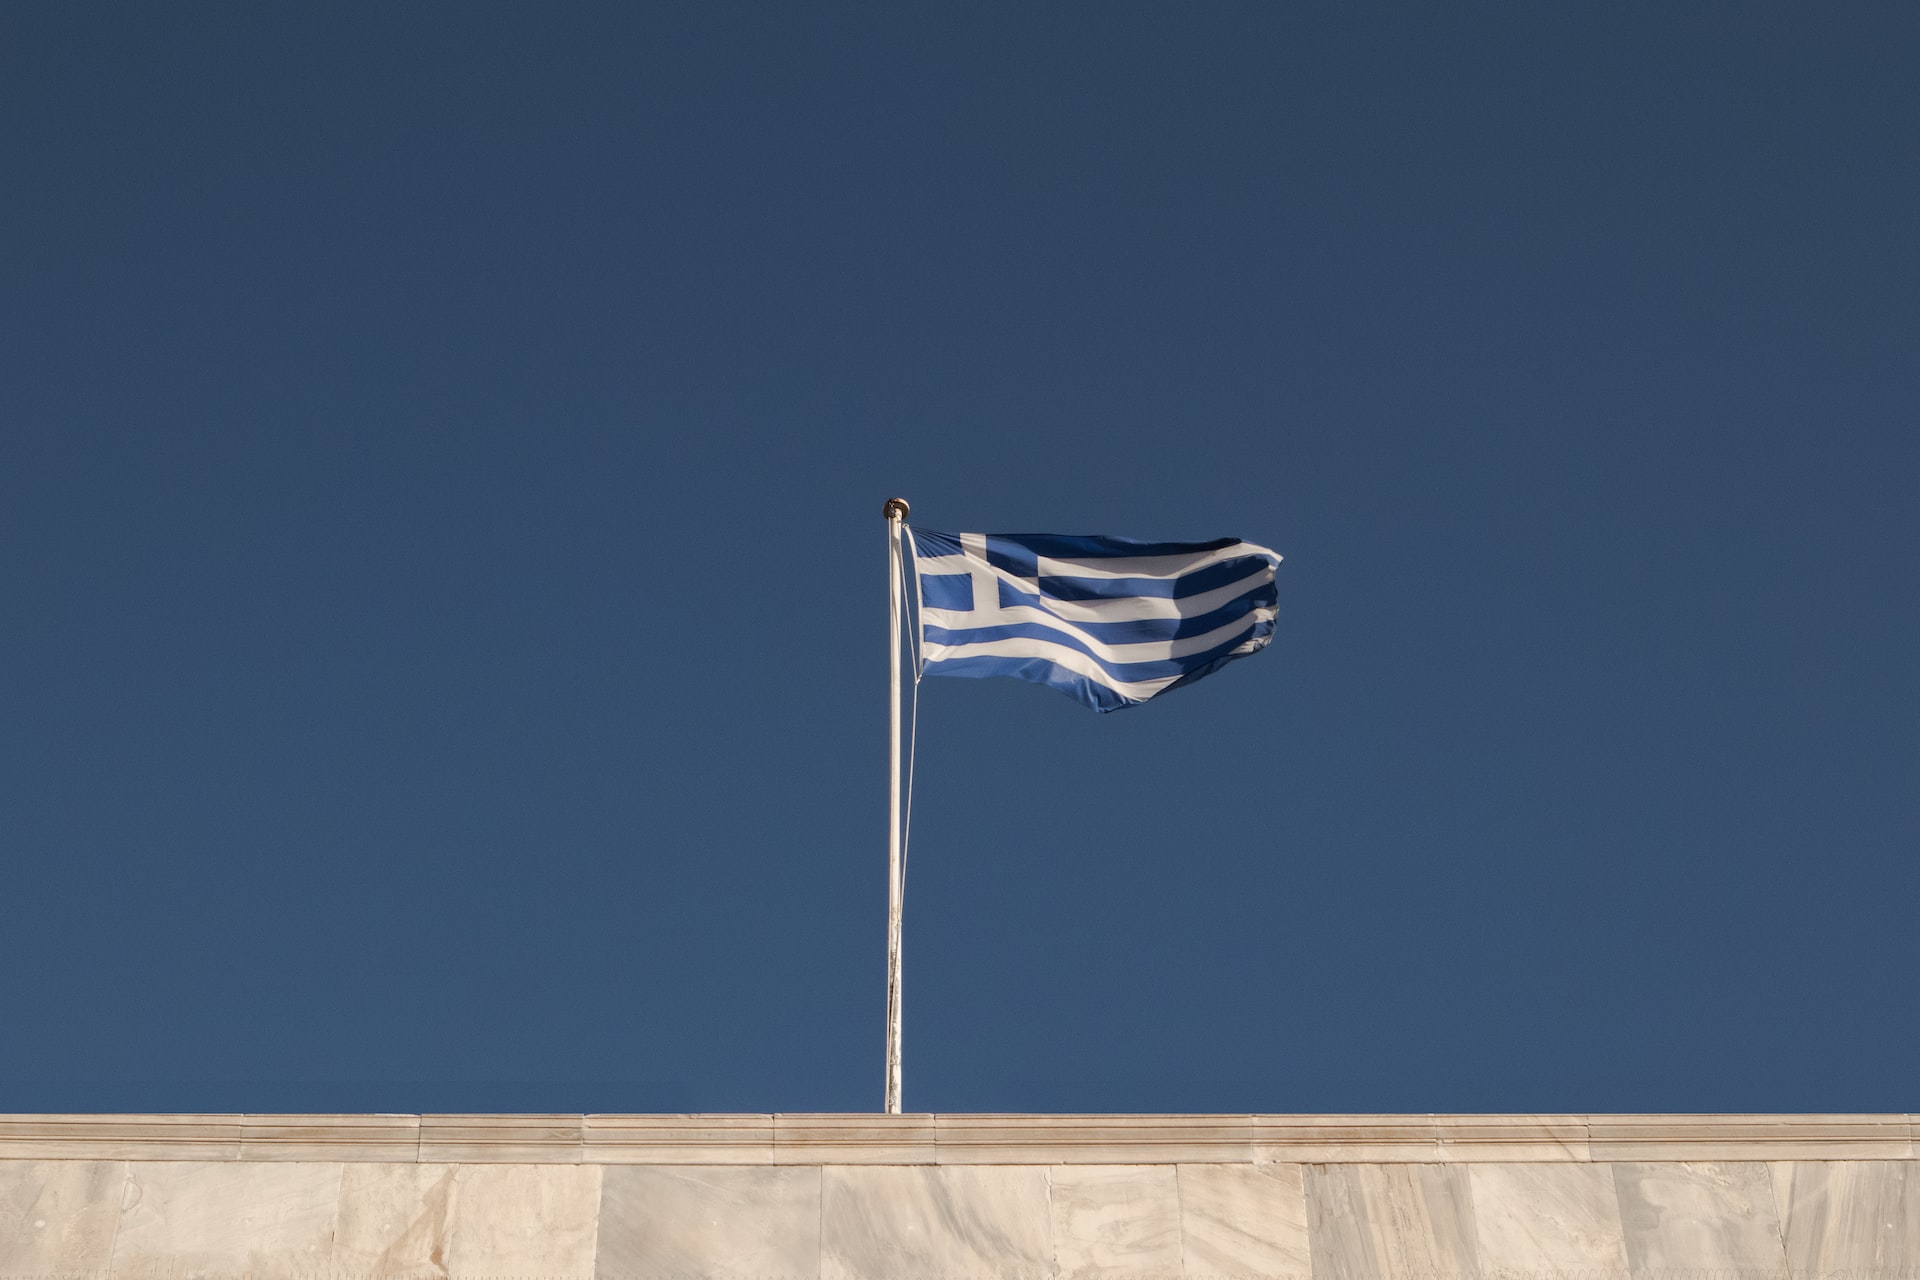 Almanya'nın Yunanistan'ın zırhlı araç beklentisini karşılamadığı iddia edildi